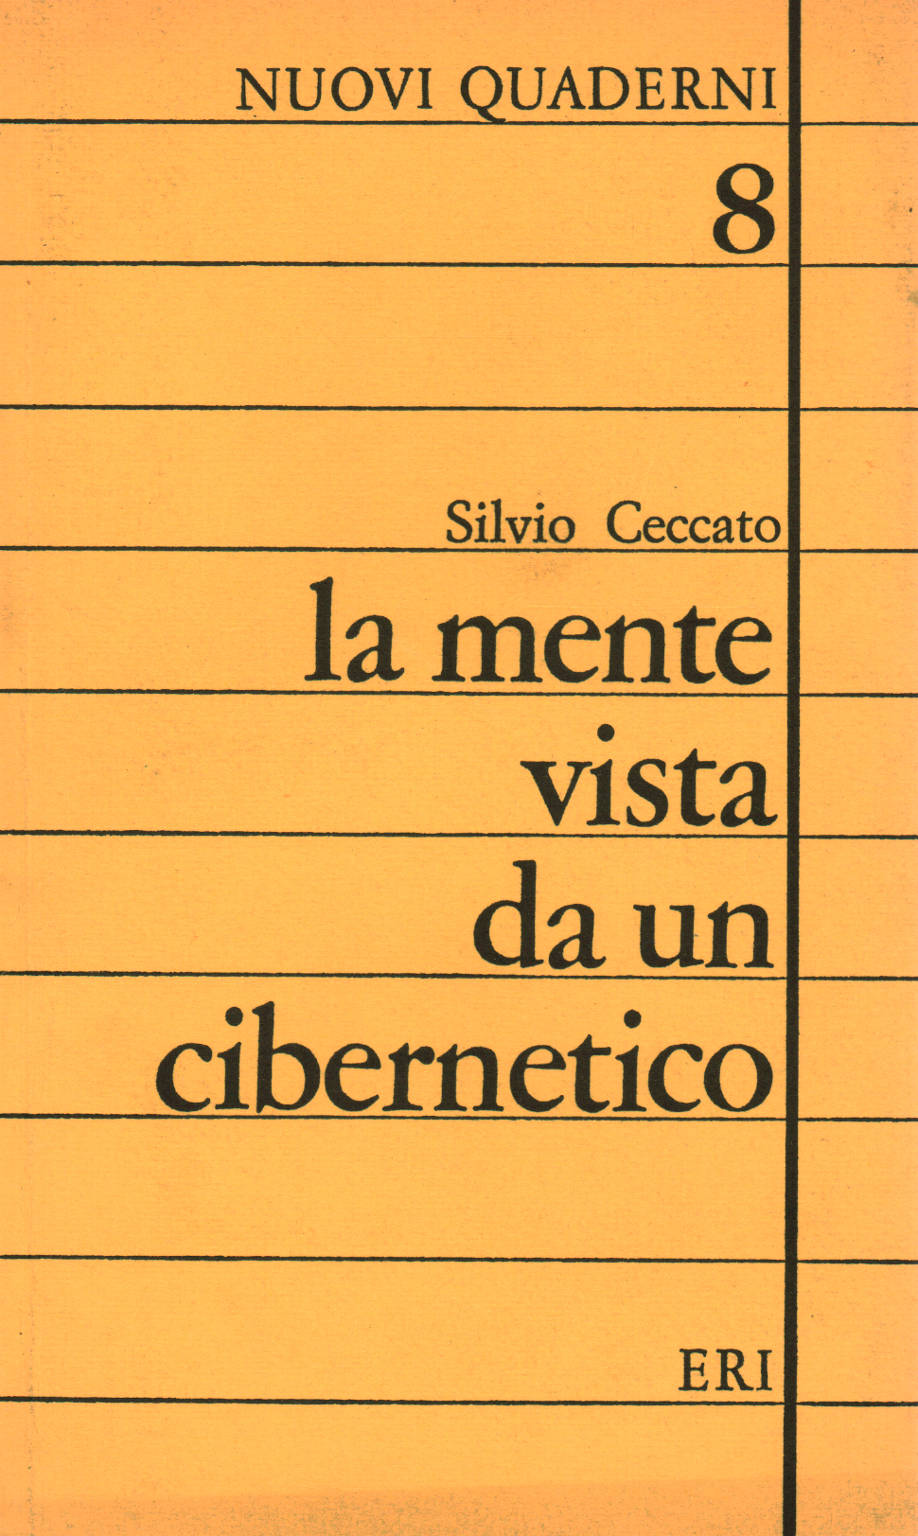 The mind seen by a cybernetician, Silvio Ceccato